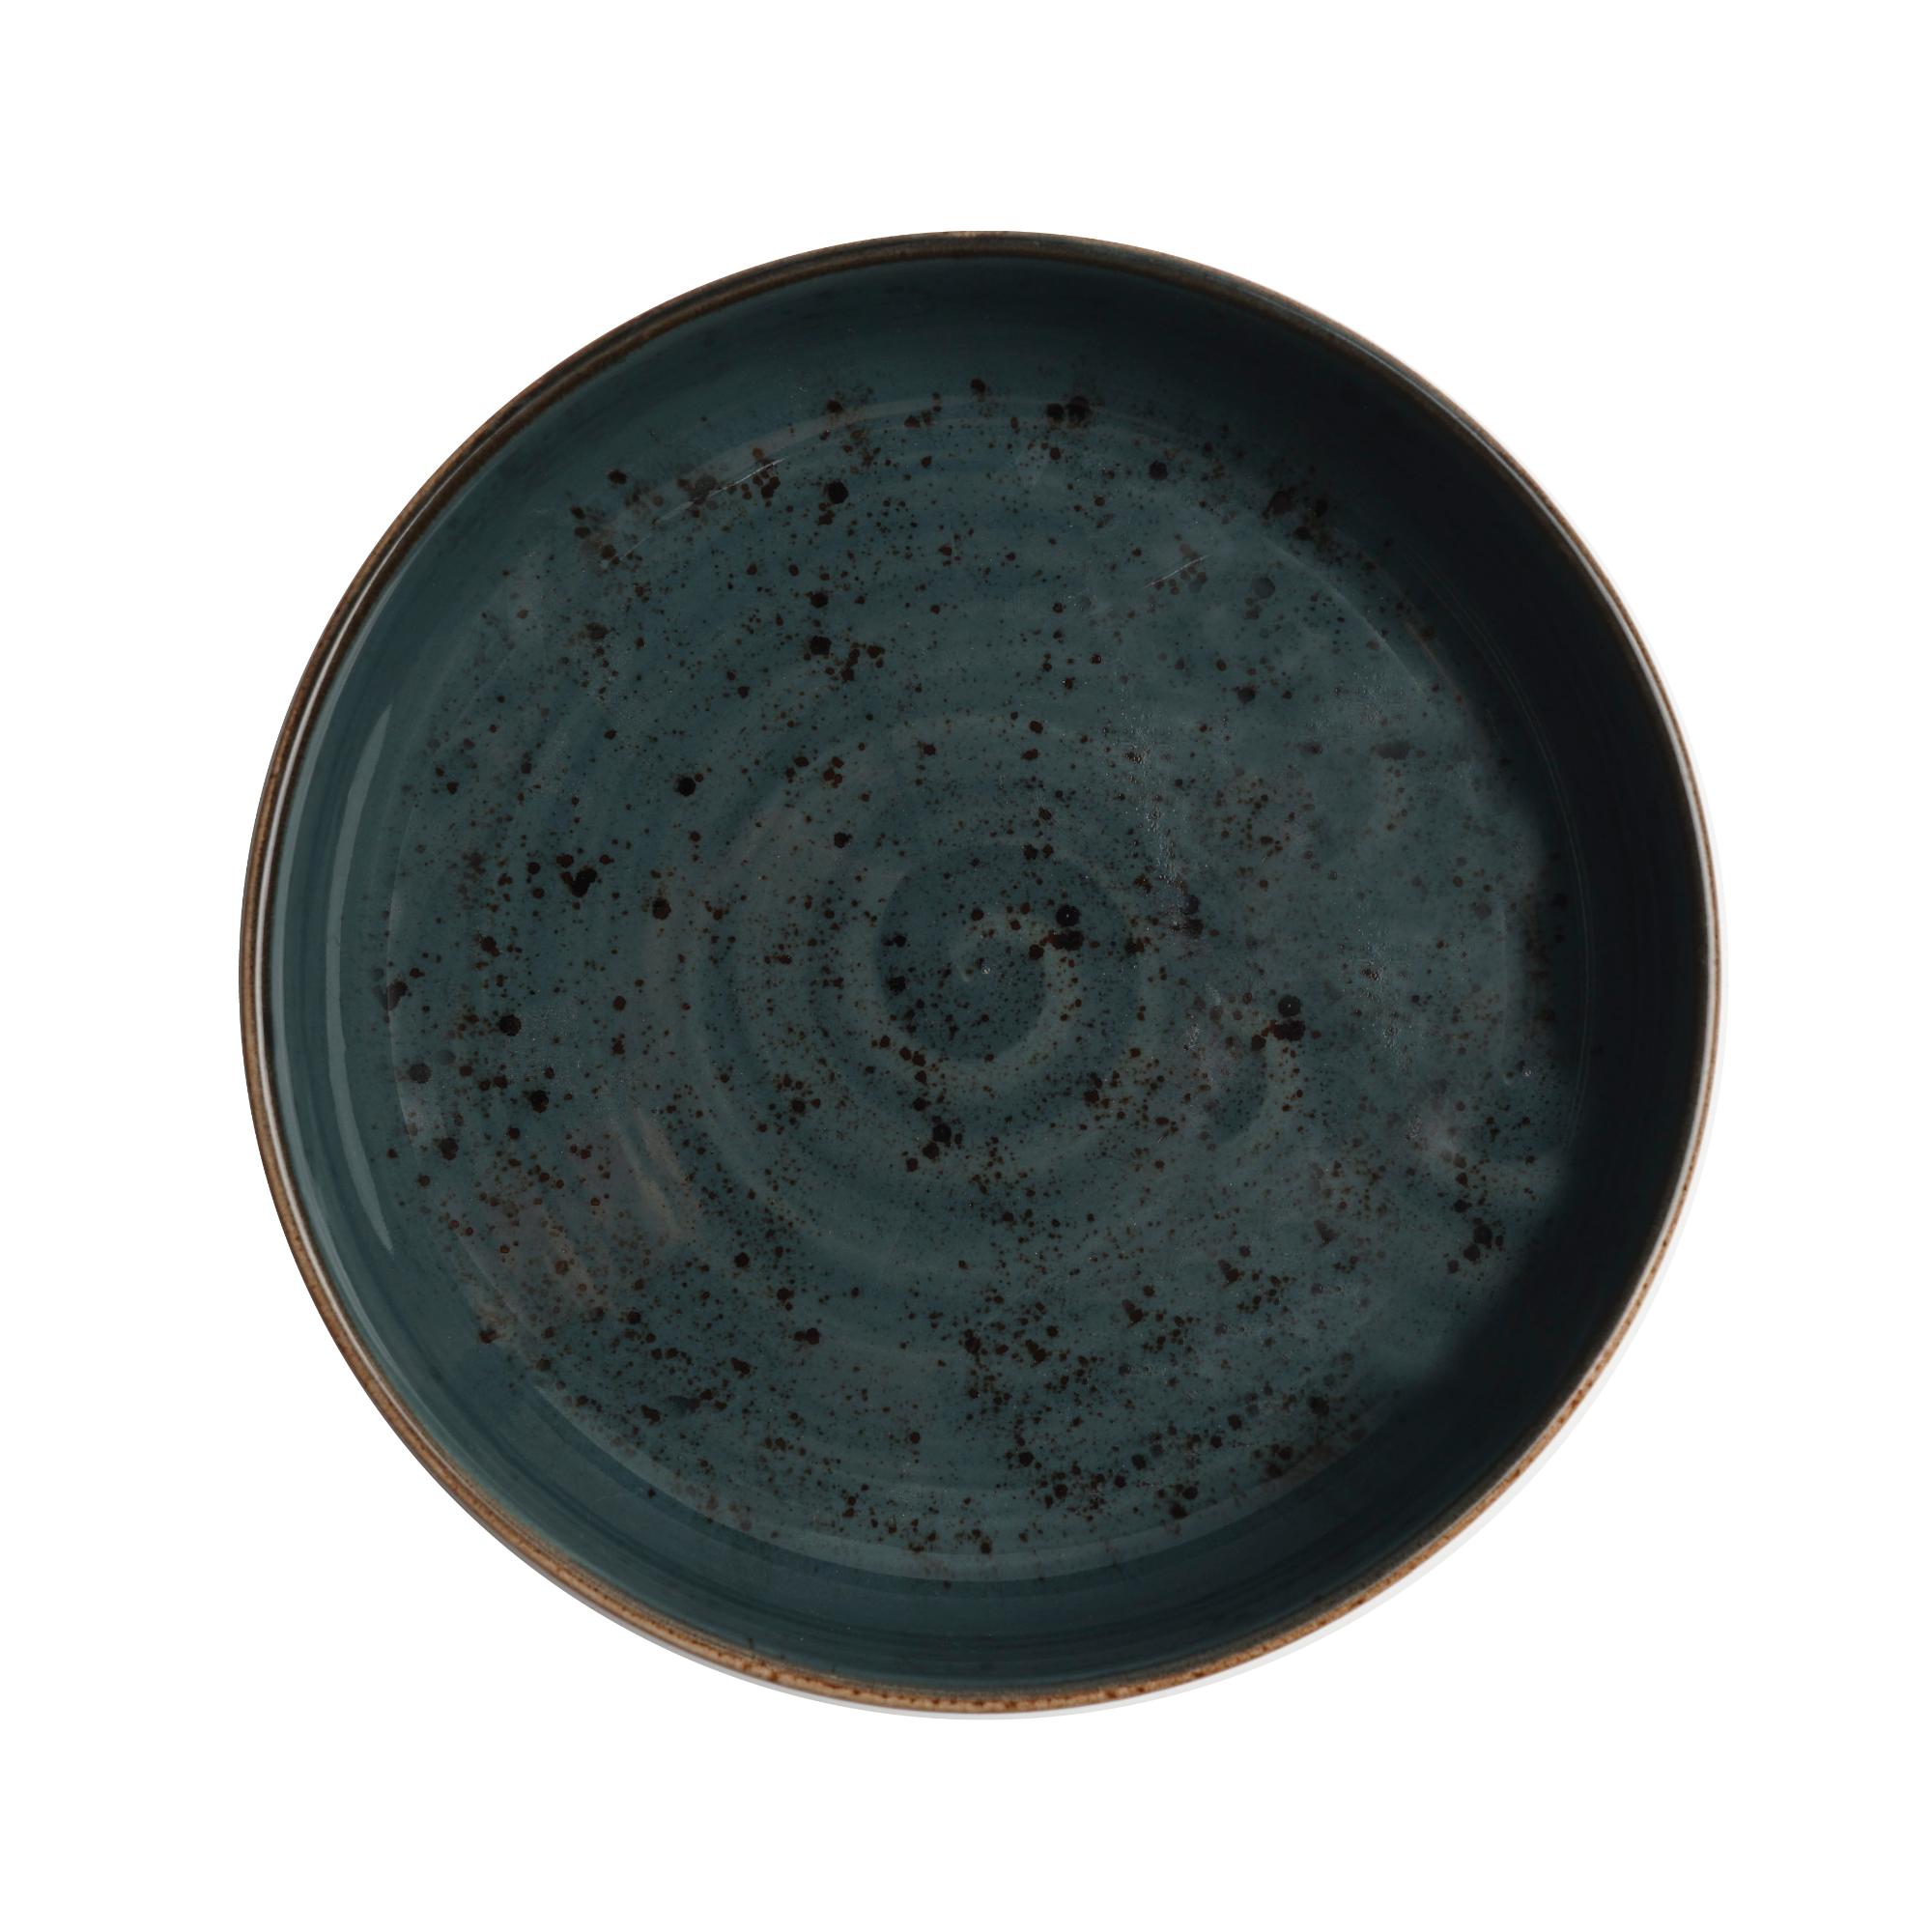 Arando shallow bowl, 200mm